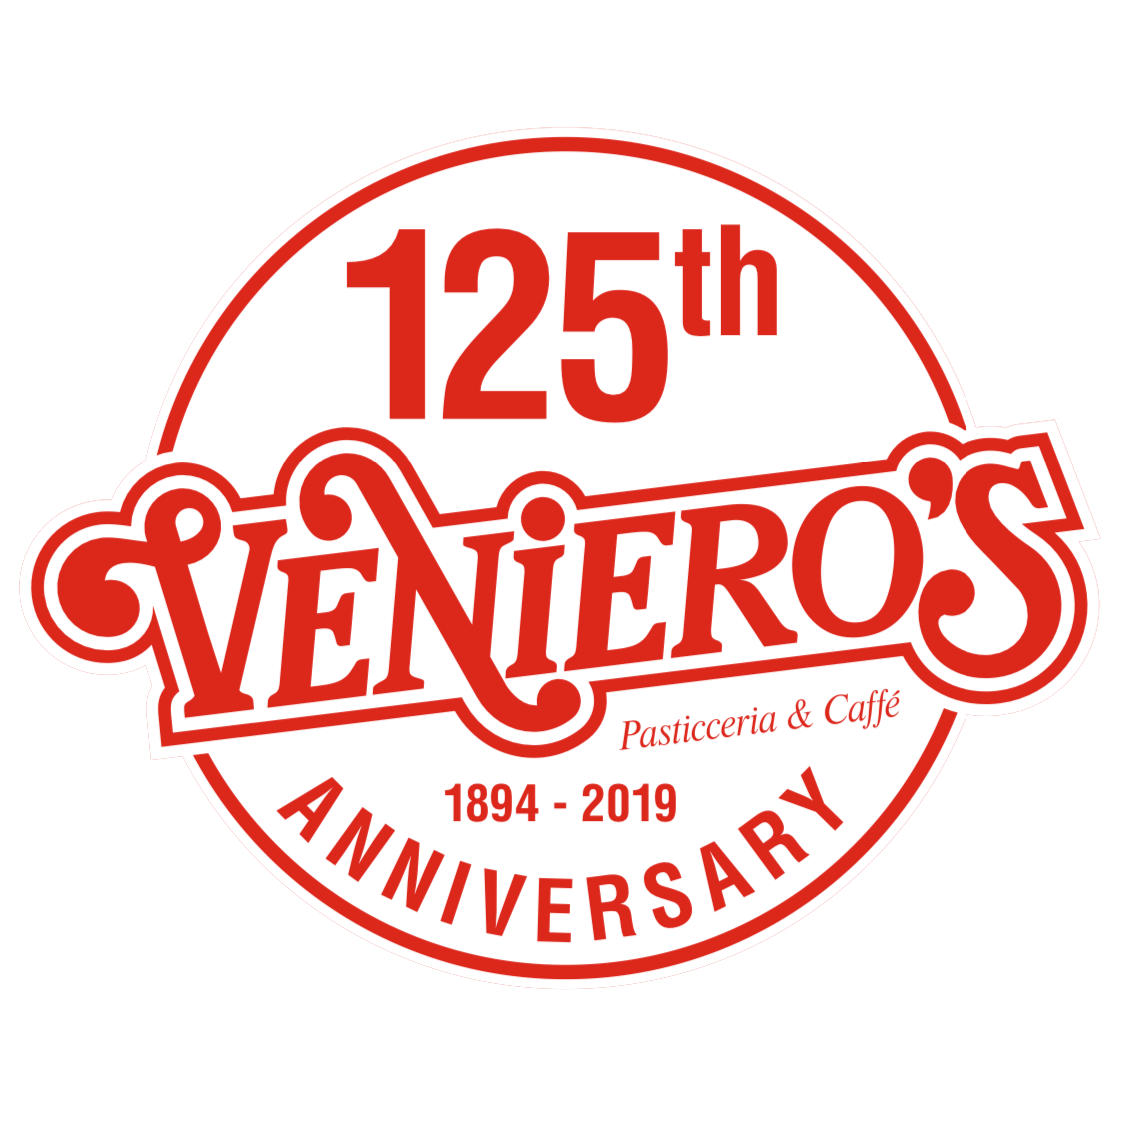 Veniero's